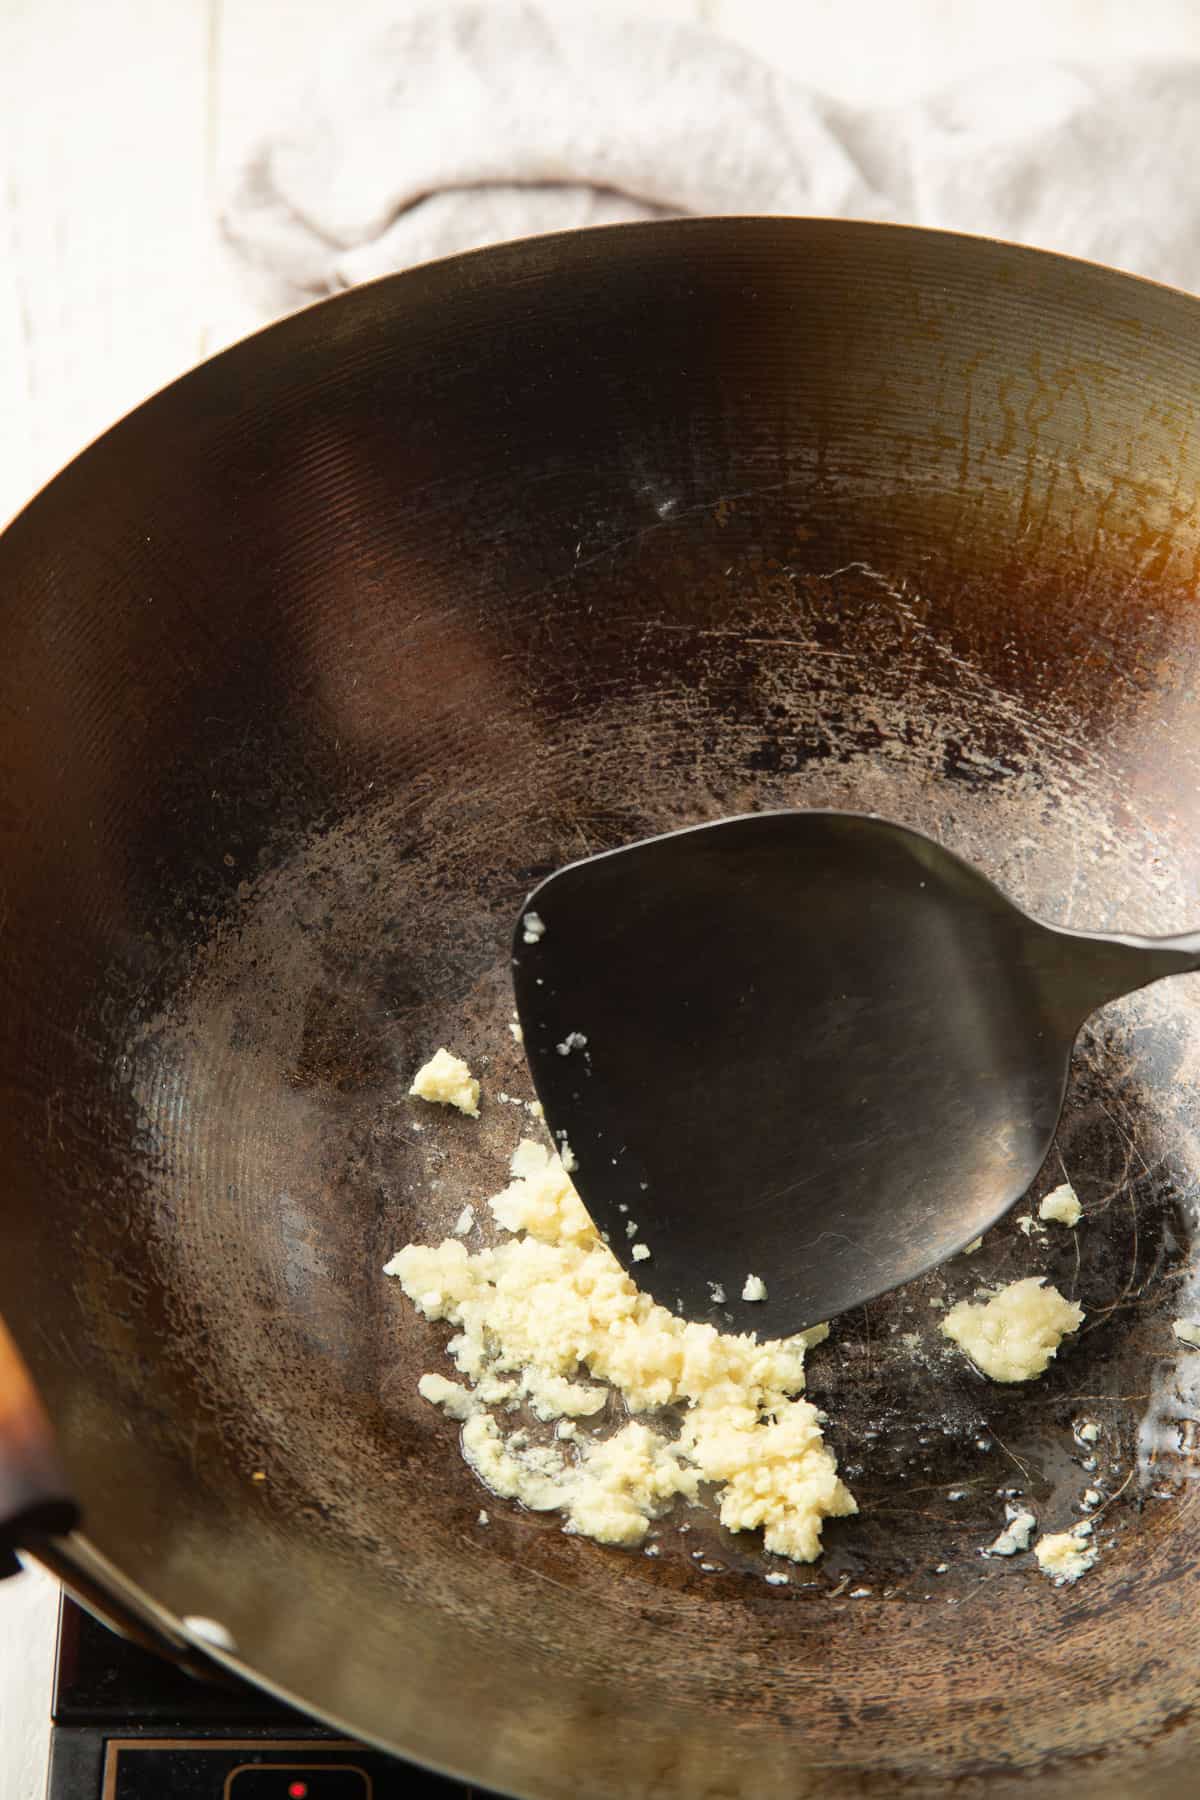 Garlic cooking in a wok.